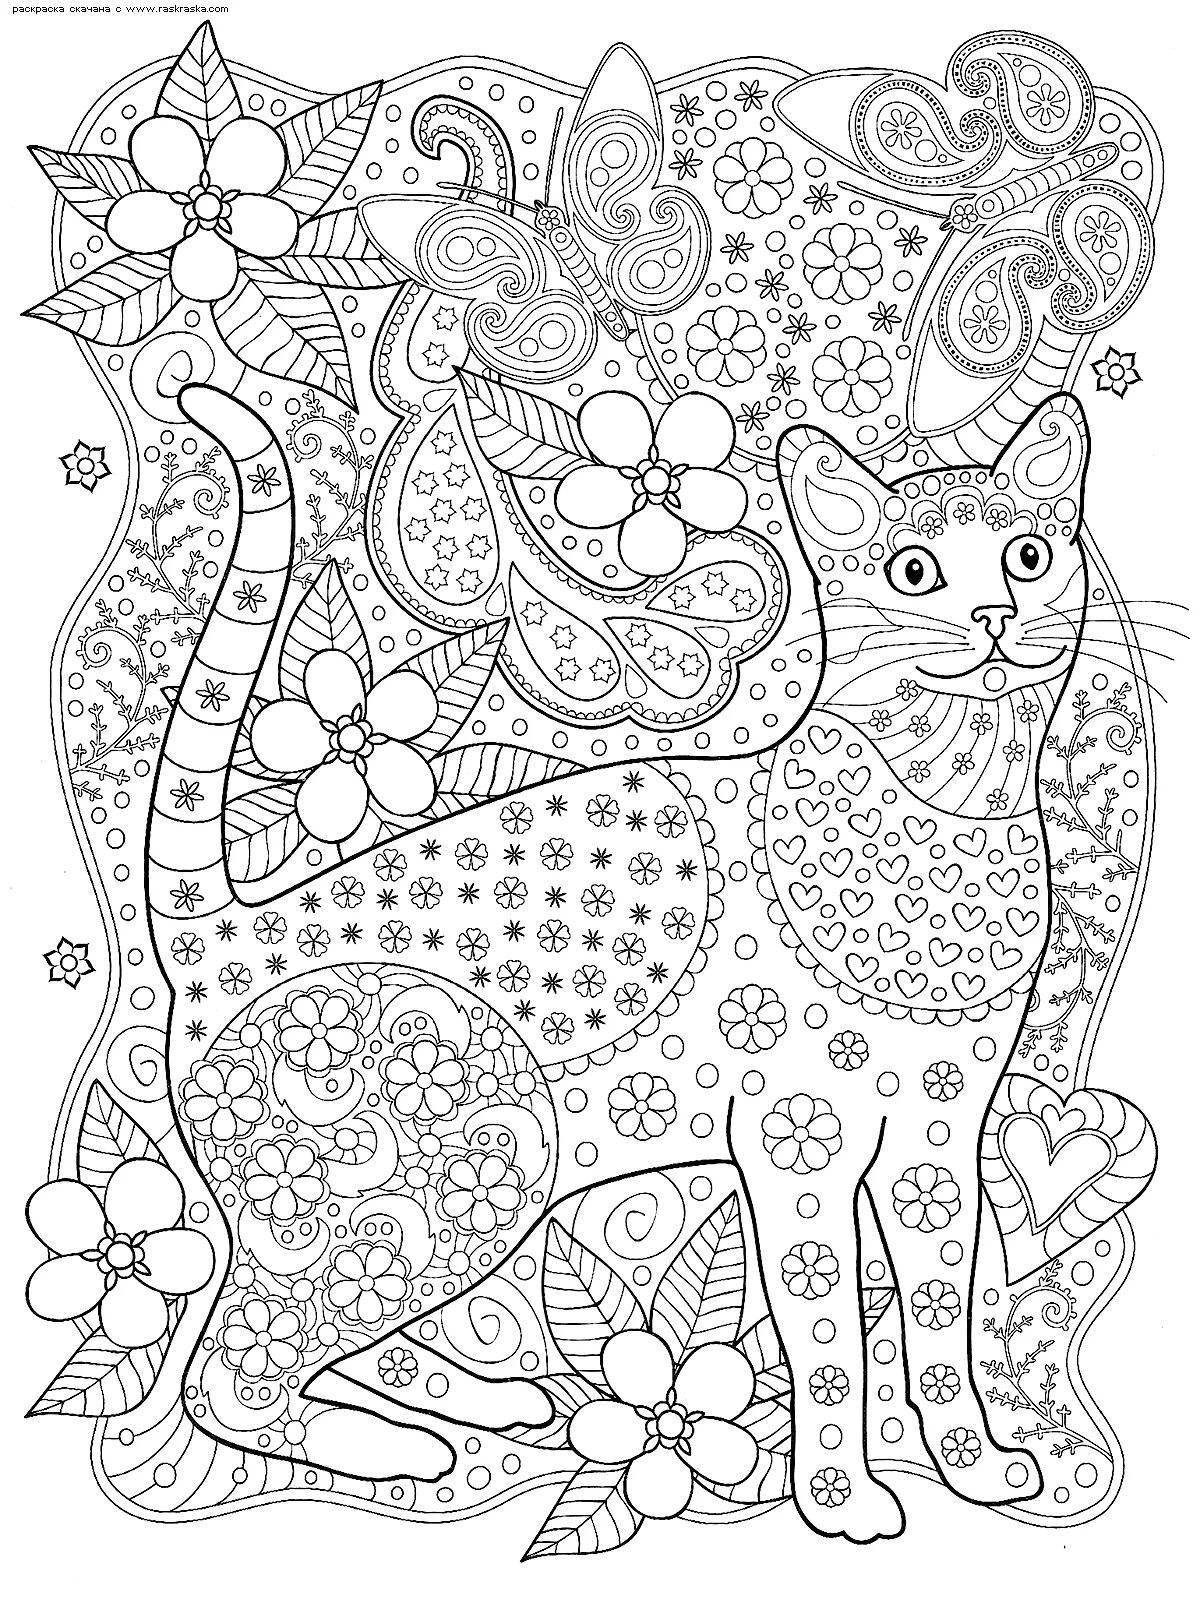 Elegant complex cat coloring book